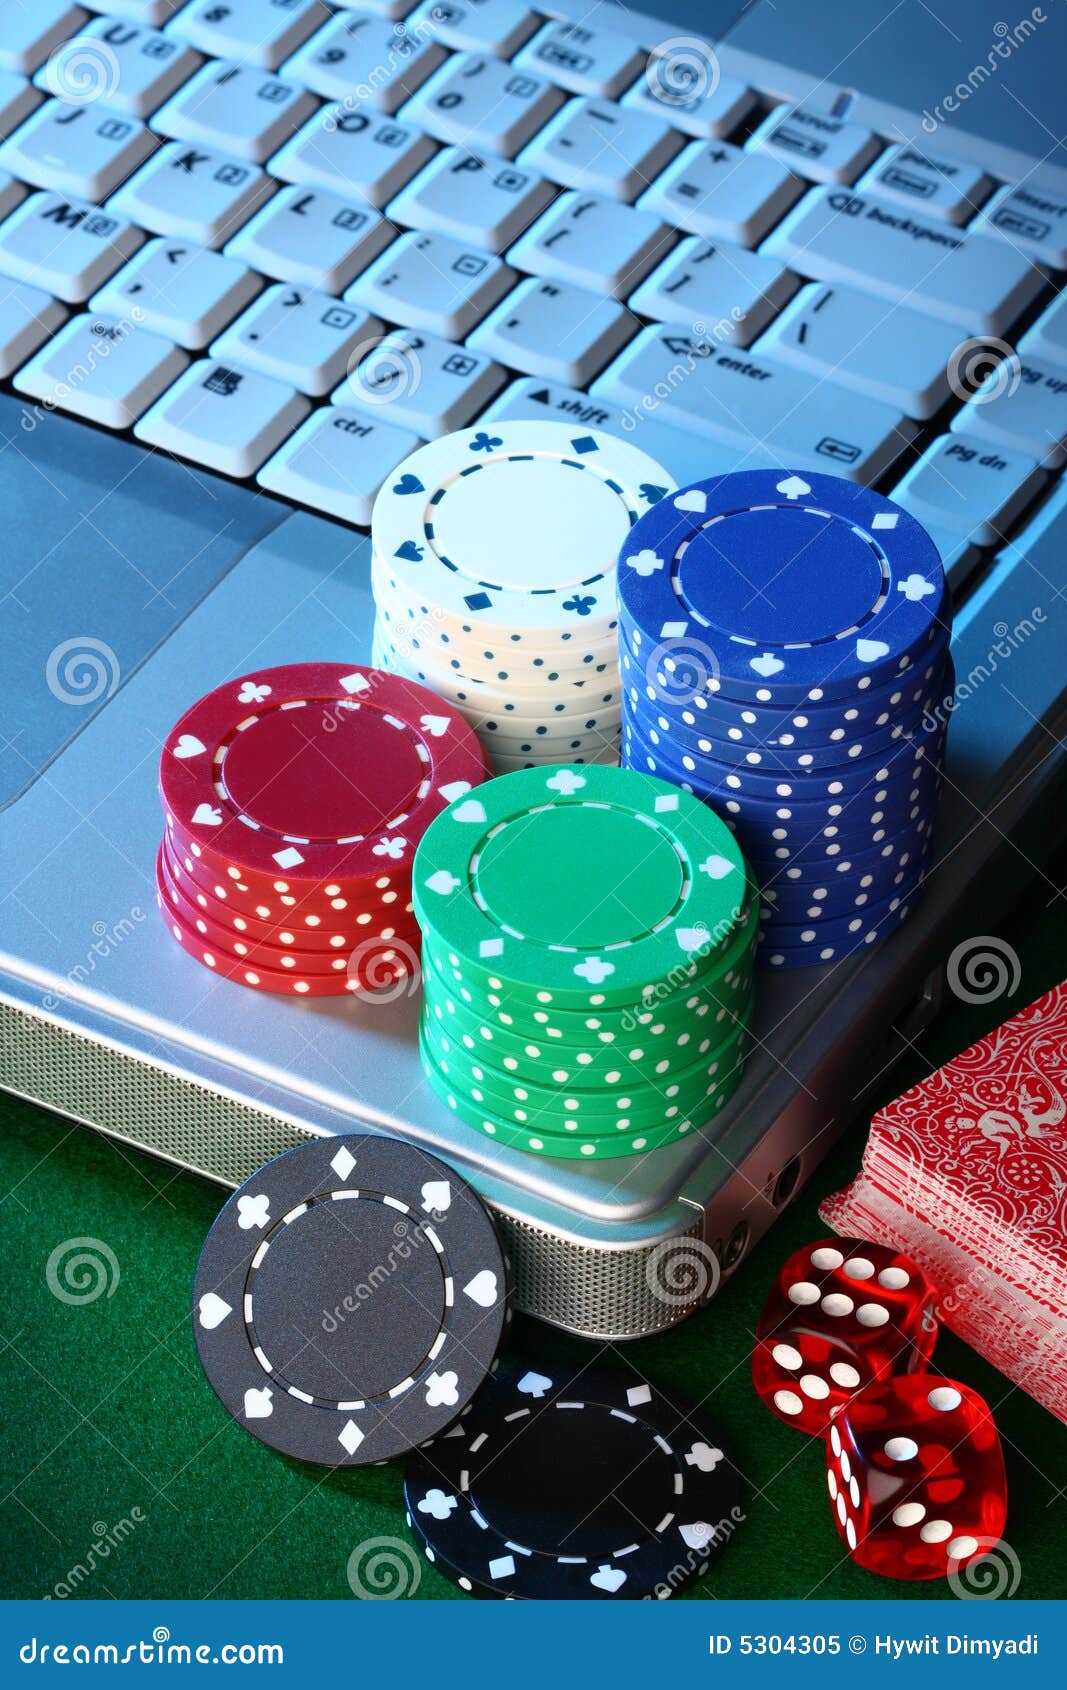 3 minimum deposit casino